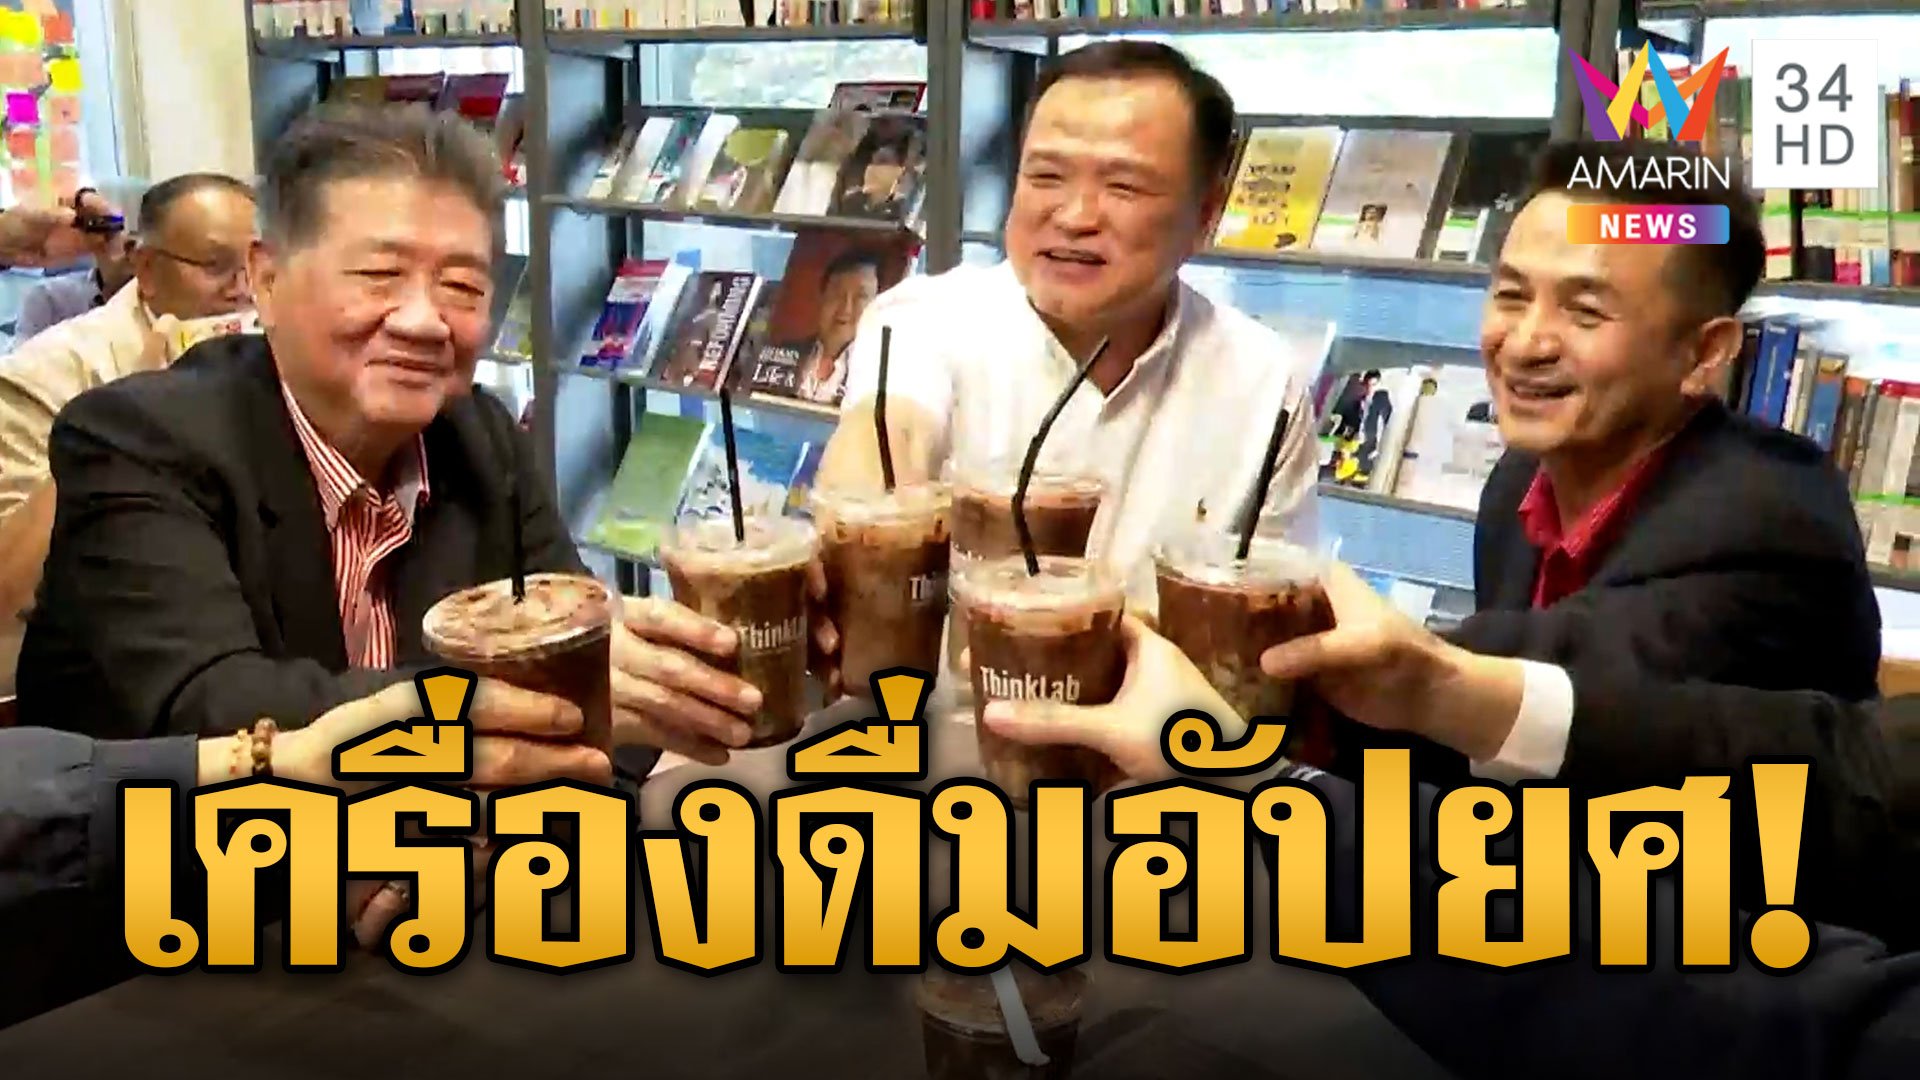 "อนุทิน" เยือน "เพื่อไทย" หารือตั้งรัฐบาลไม่เอาก้าวไกล ชาวเน็ตเปรียบ "มิ้นต์ช็อก" เครื่องดื่มอัปยศ | ข่าวอรุณอมรินทร์ | 23 ก.ค. 66 | AMARIN TVHD34